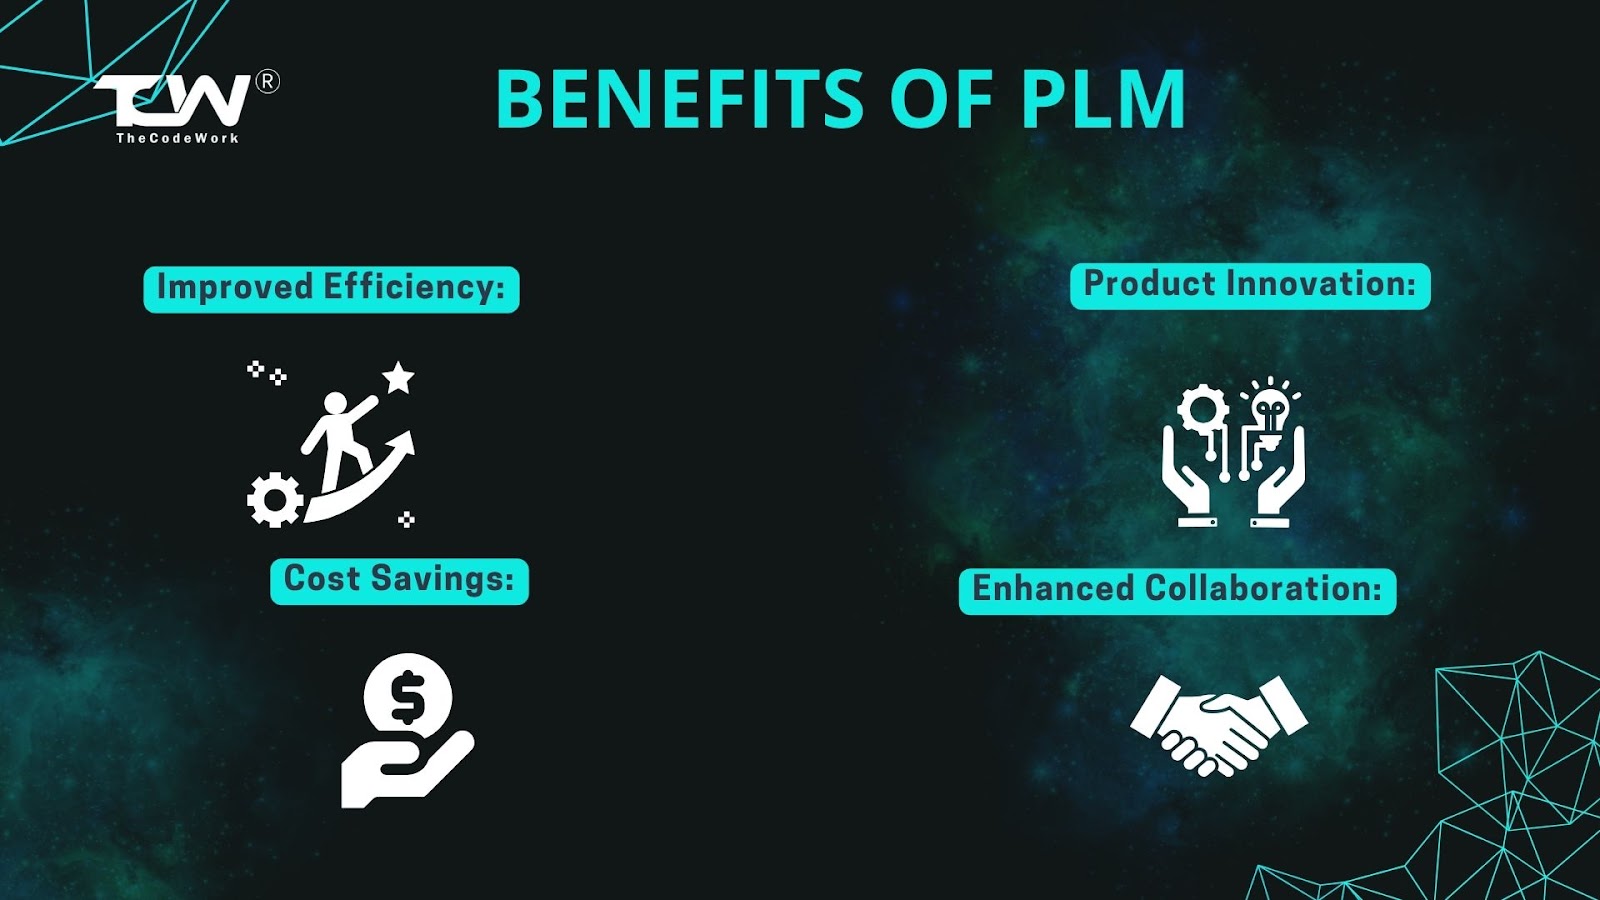 Benefits of PLM